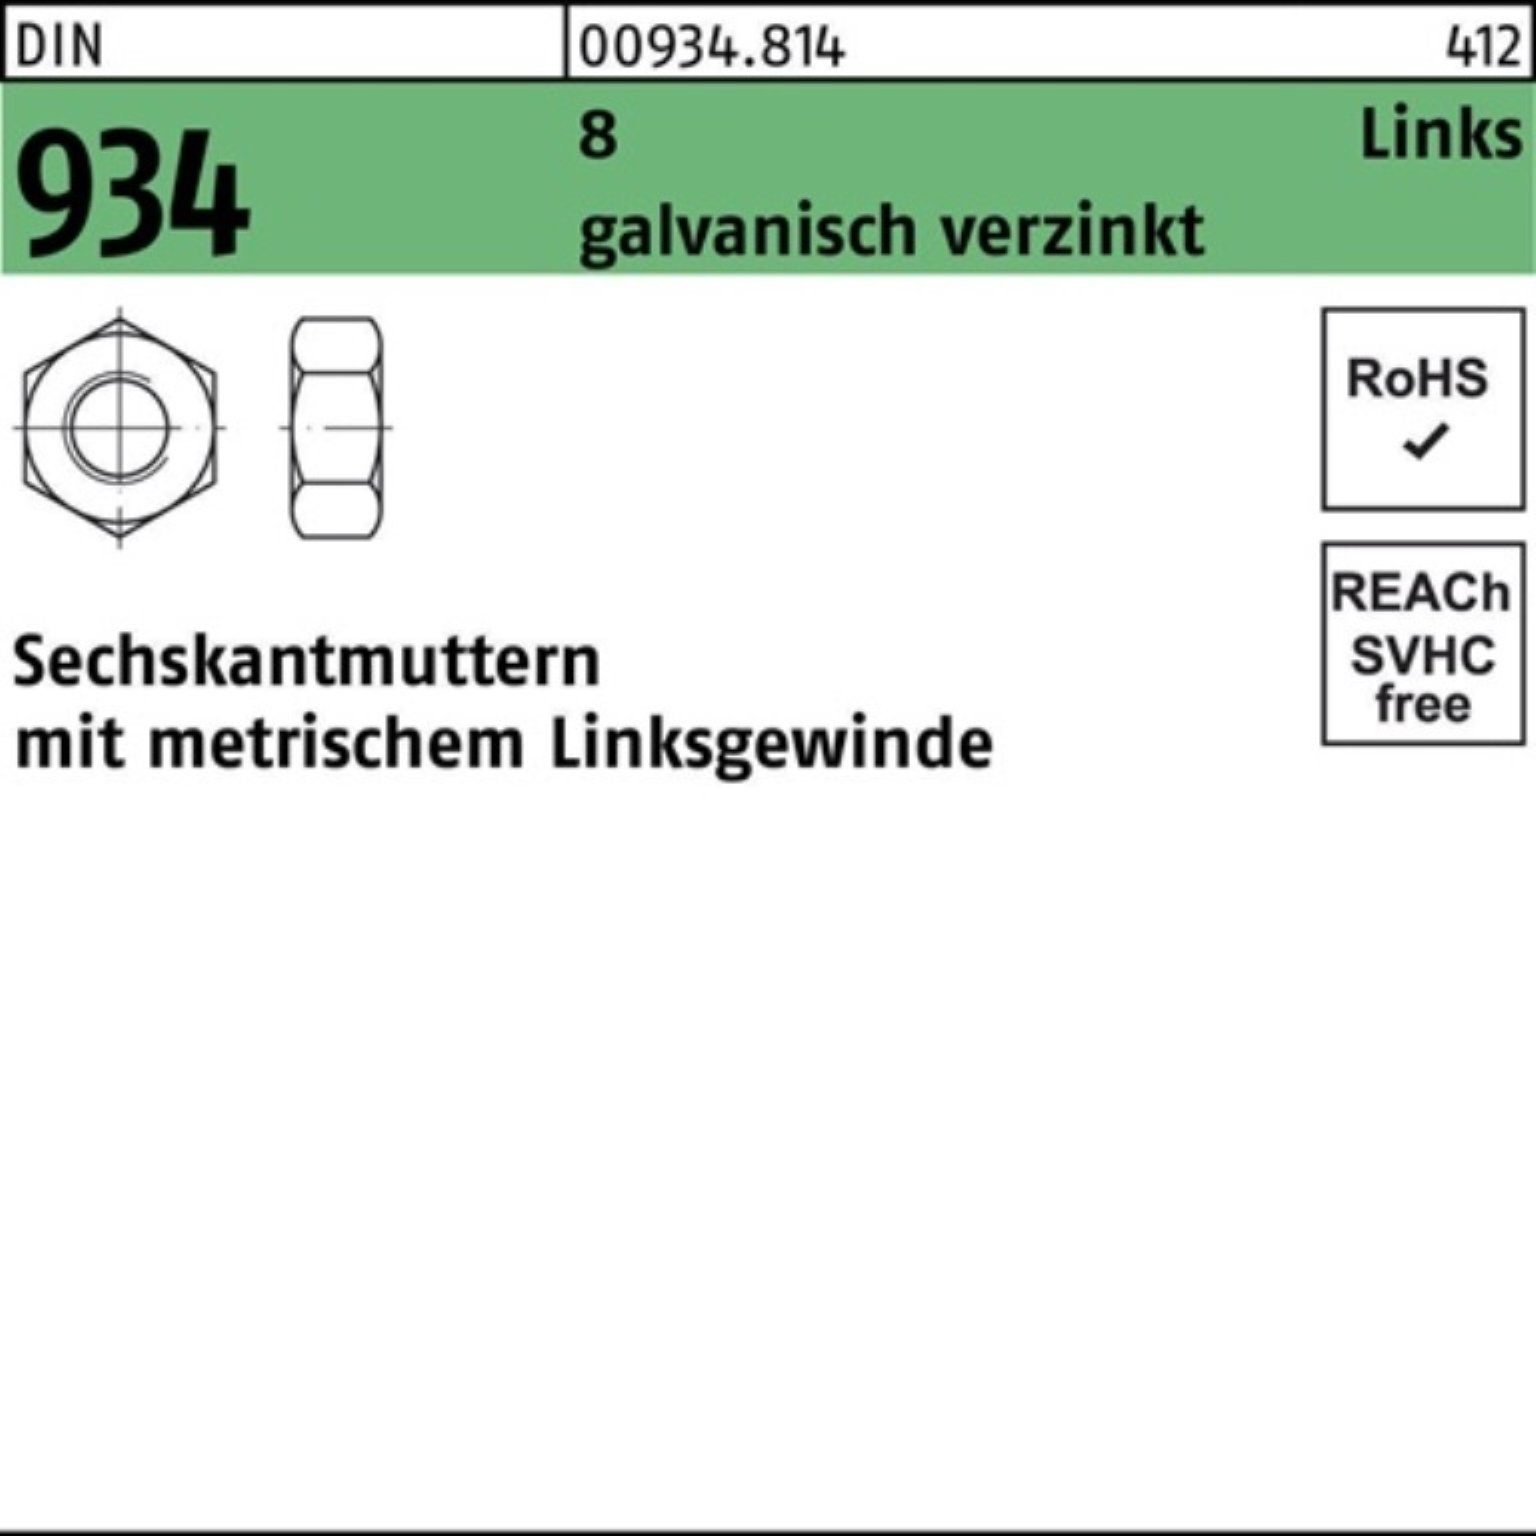 Stü -LH Reyher links Muttern Sechskantmutter 934 Pack DIN galv.verz. 8 M12 100 100er